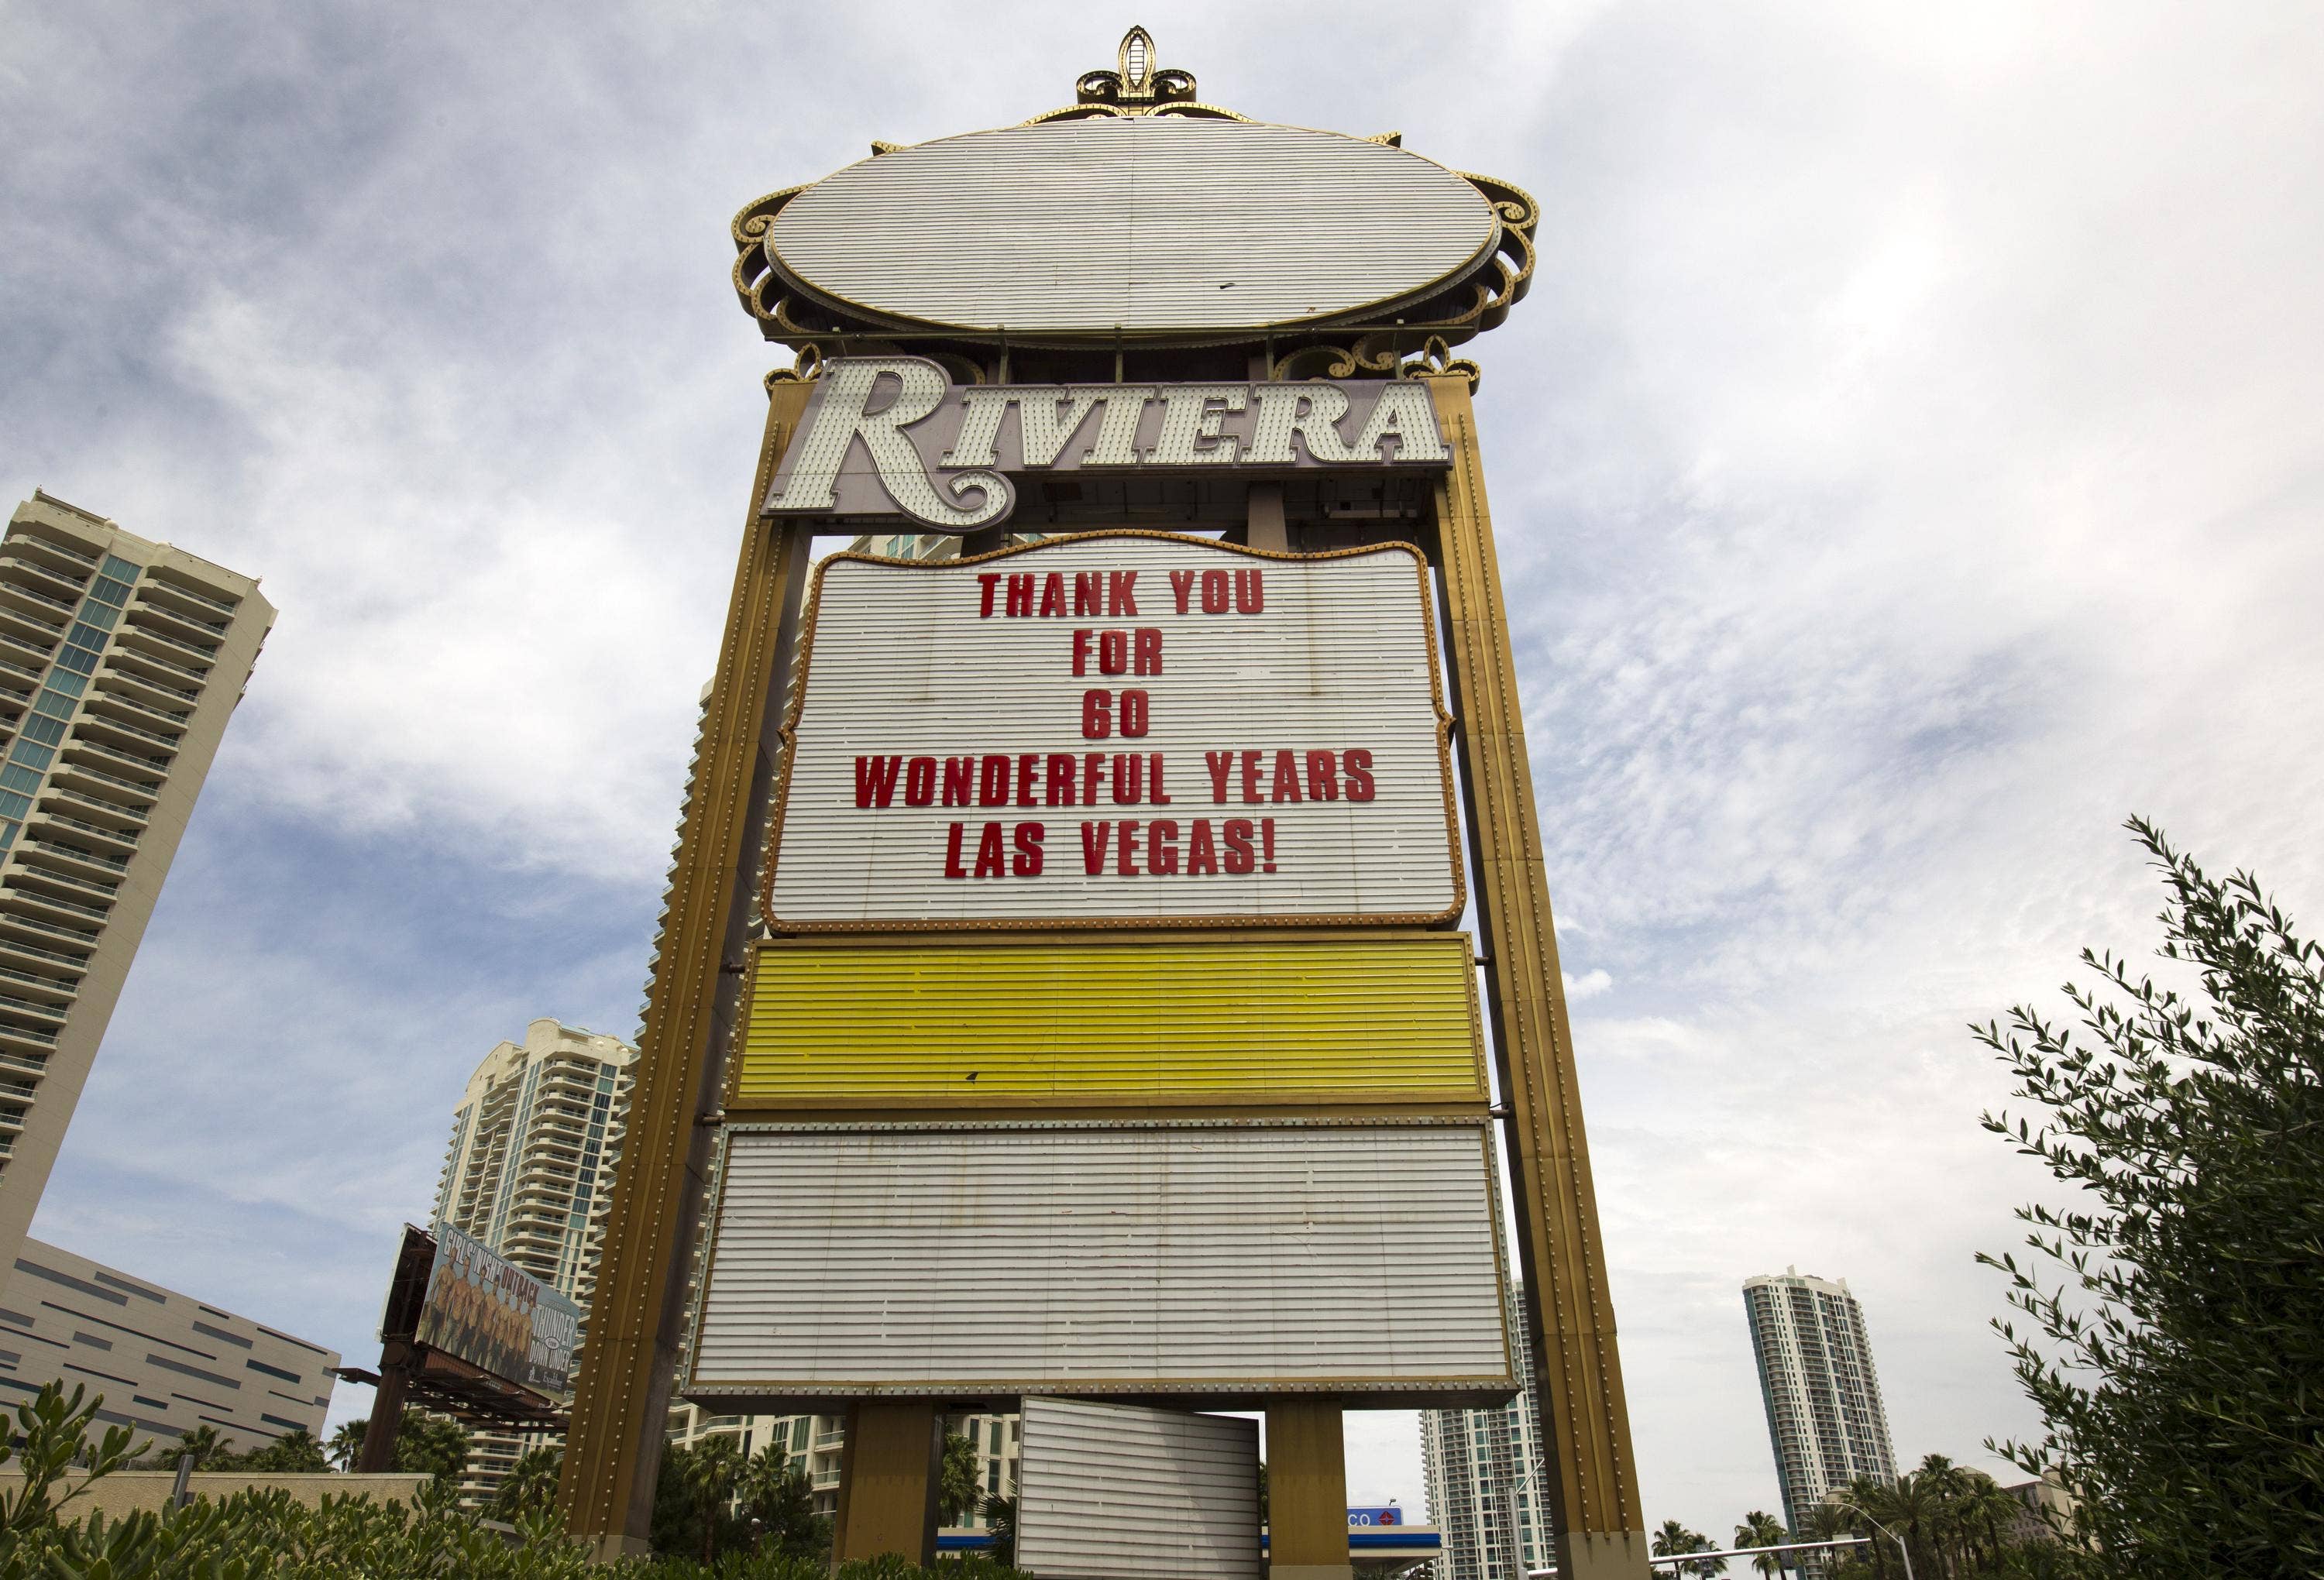 Riviera Hotel sign, Las Vegas, The Riviera Hotel is still i…